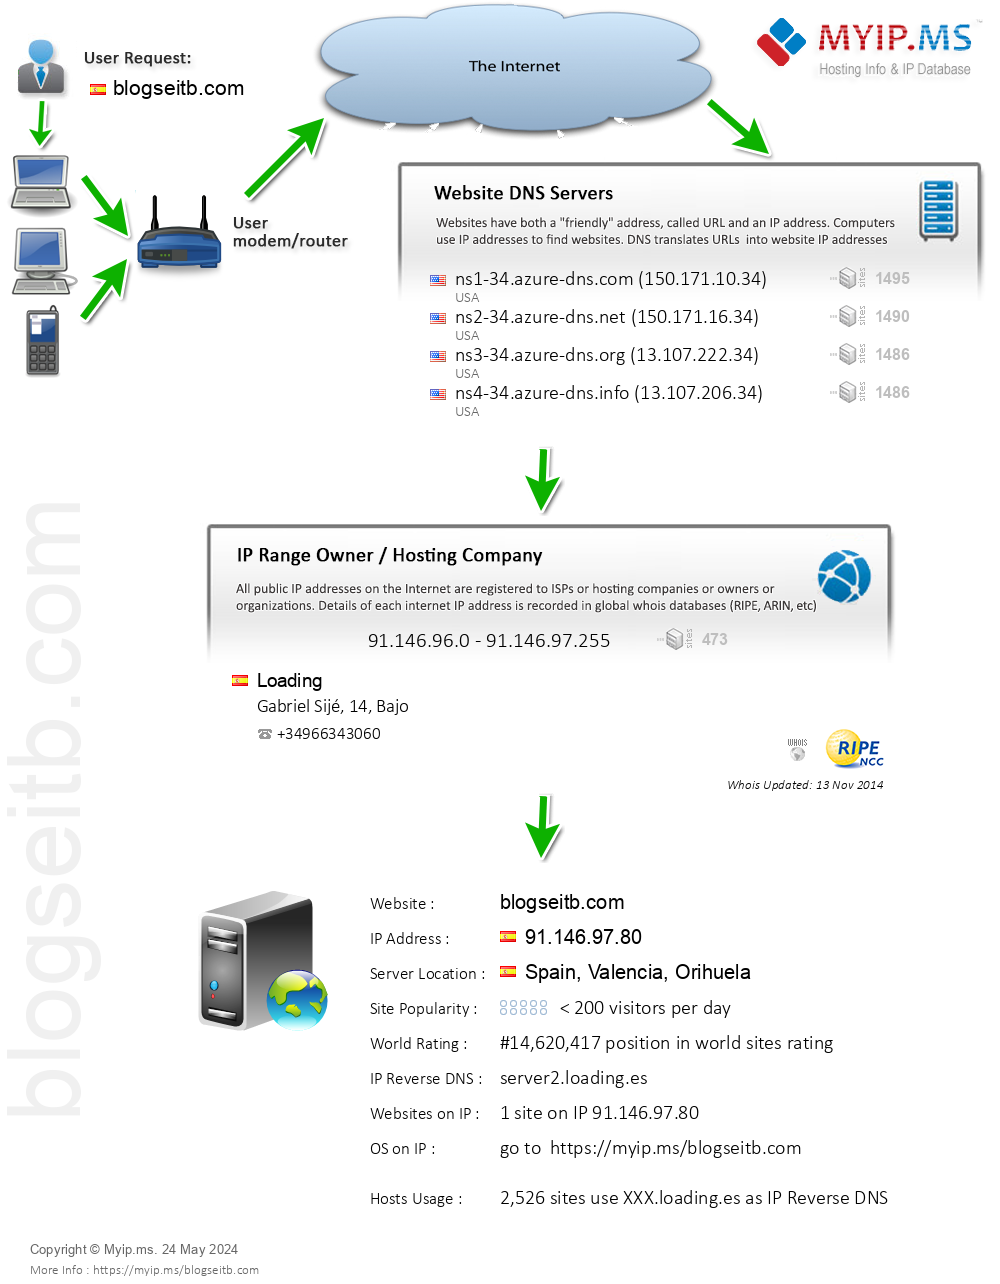 Blogseitb.com - Website Hosting Visual IP Diagram